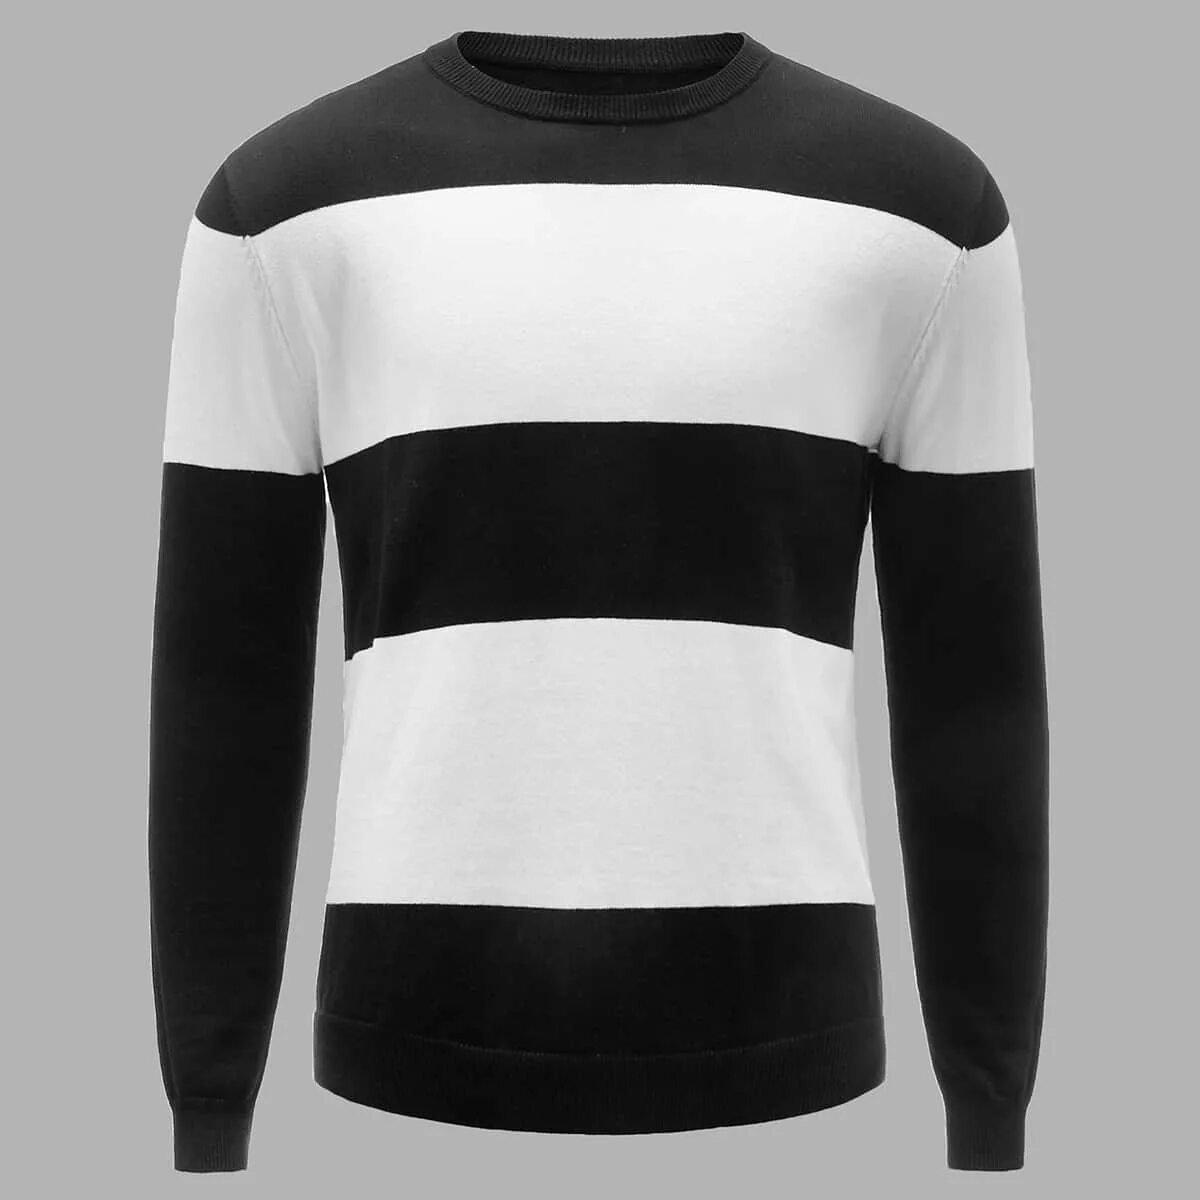 Черно белые джемпера. Черно белый свитер. Чёрно белый свитер.